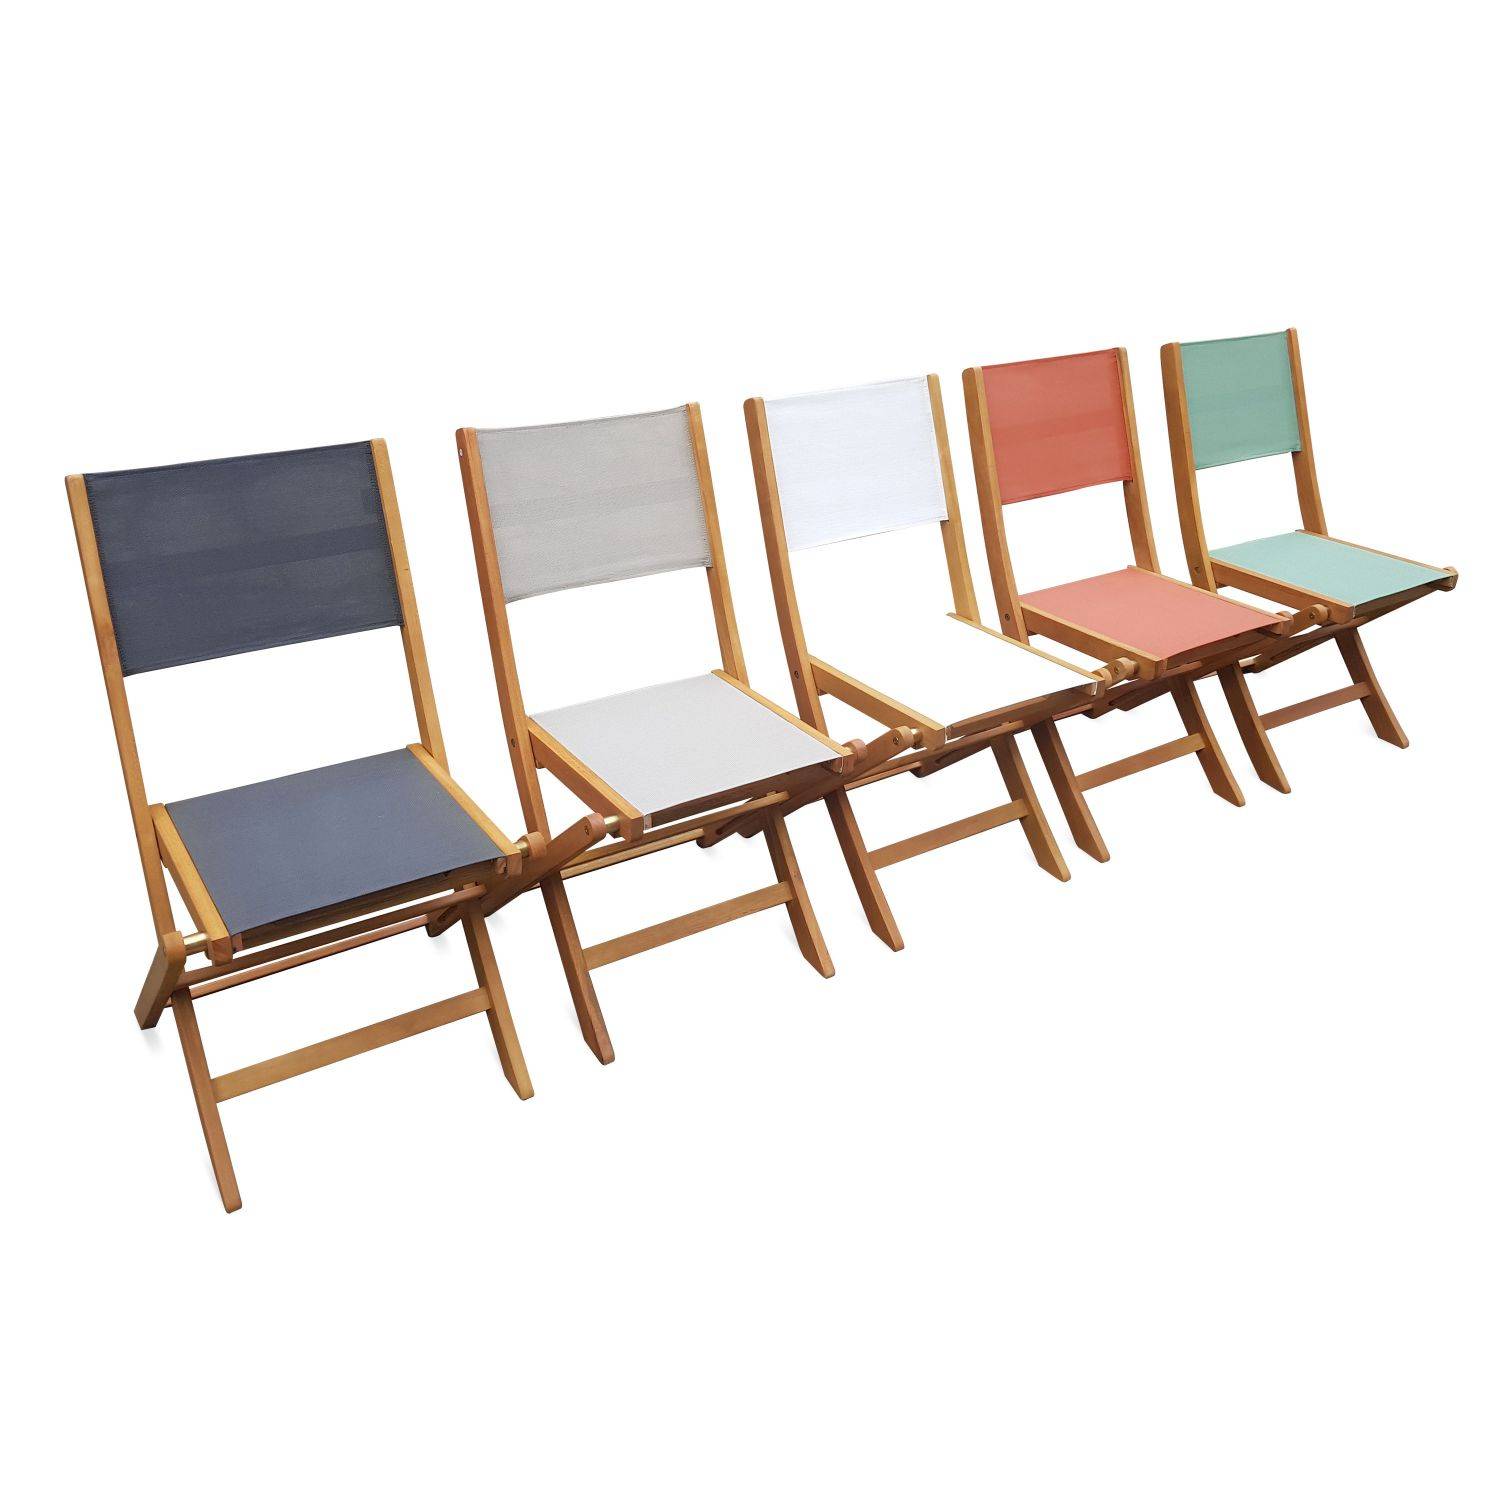 Gartenstühle aus Holz und Textilene - Almeria graugrün - 2 Klappstühle aus geöltem FSC Eukalyptusholz und Textilene Photo5